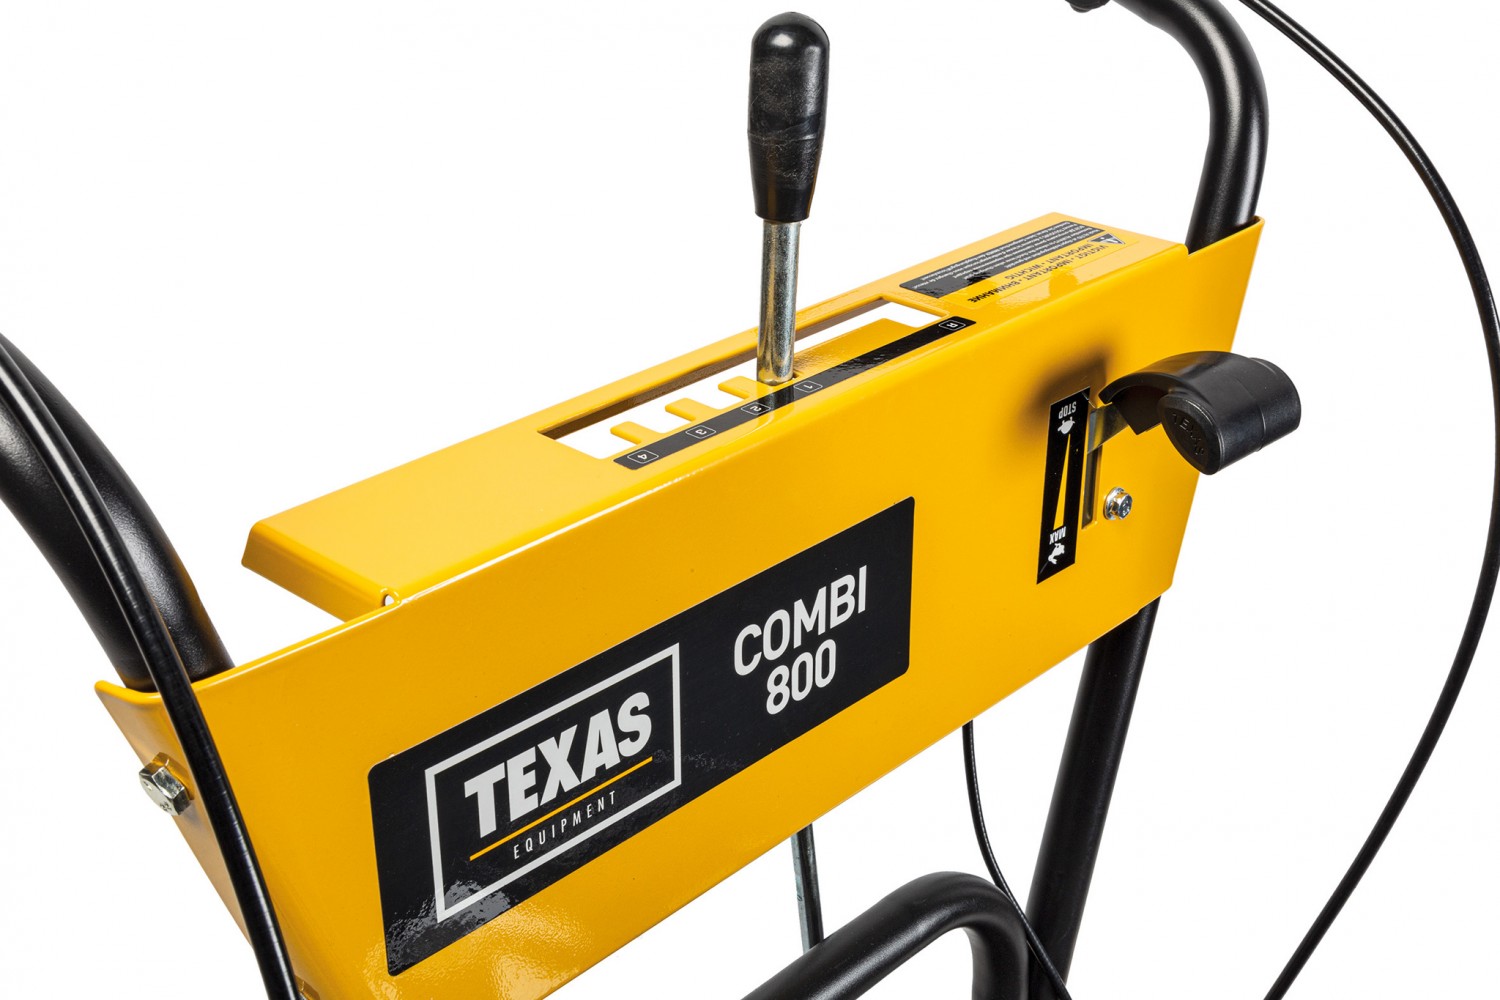 Gewerbliche Werkzeuge Texas Combi 800B im Test, Bild 4